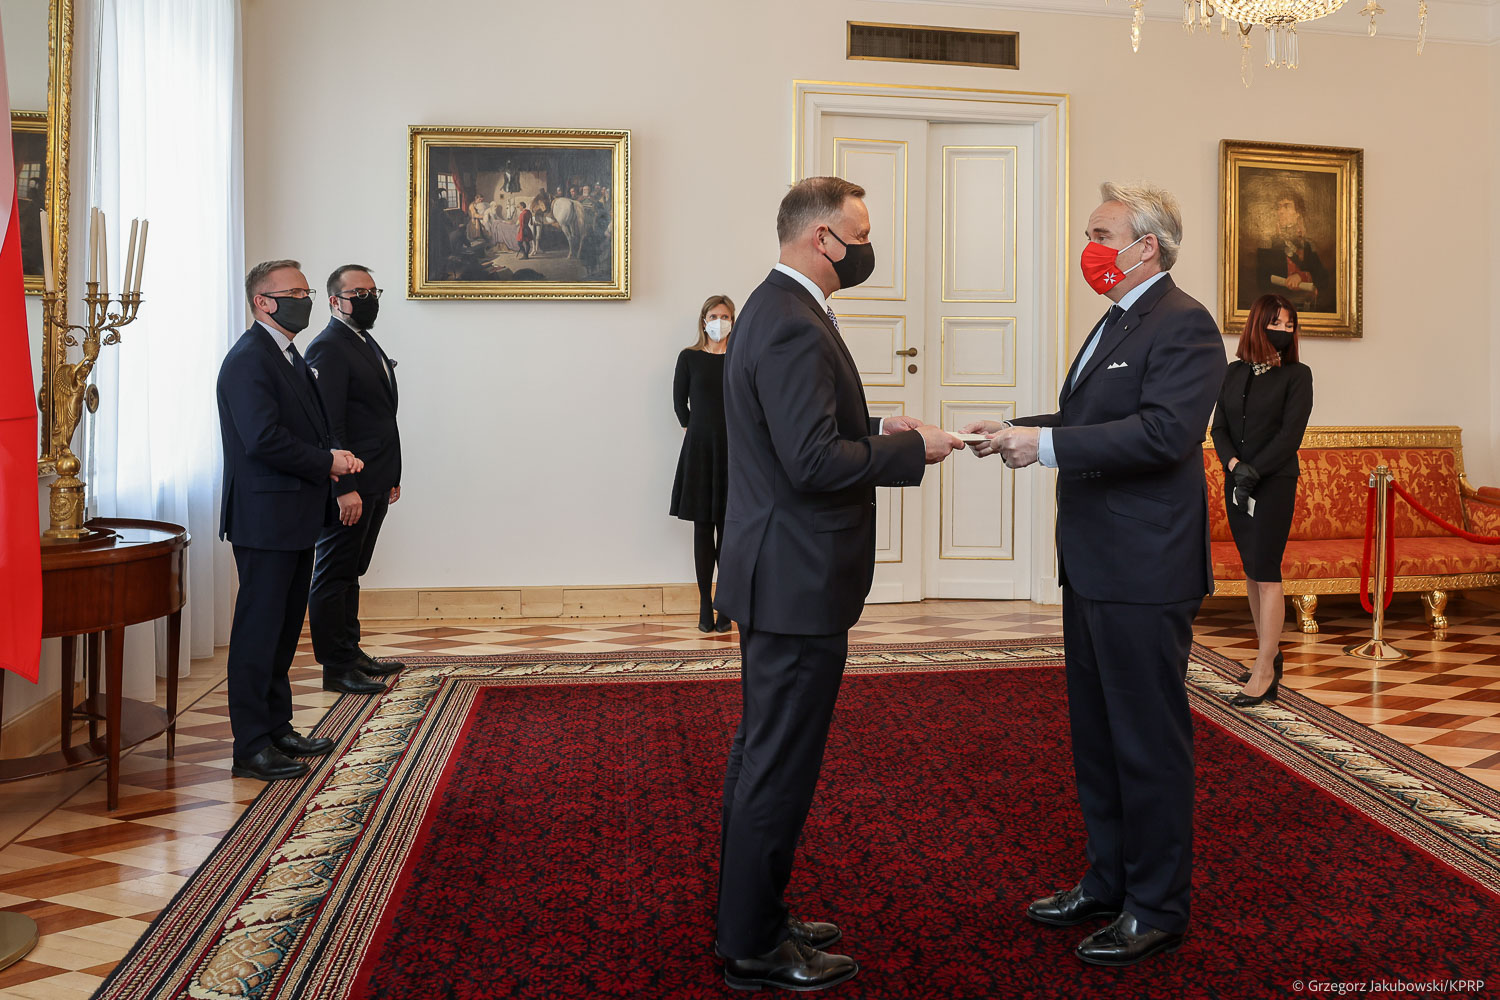 L’ambassadeur de l’Ordre souverain de Malte auprès de la Pologne a présenté ses lettres de créance